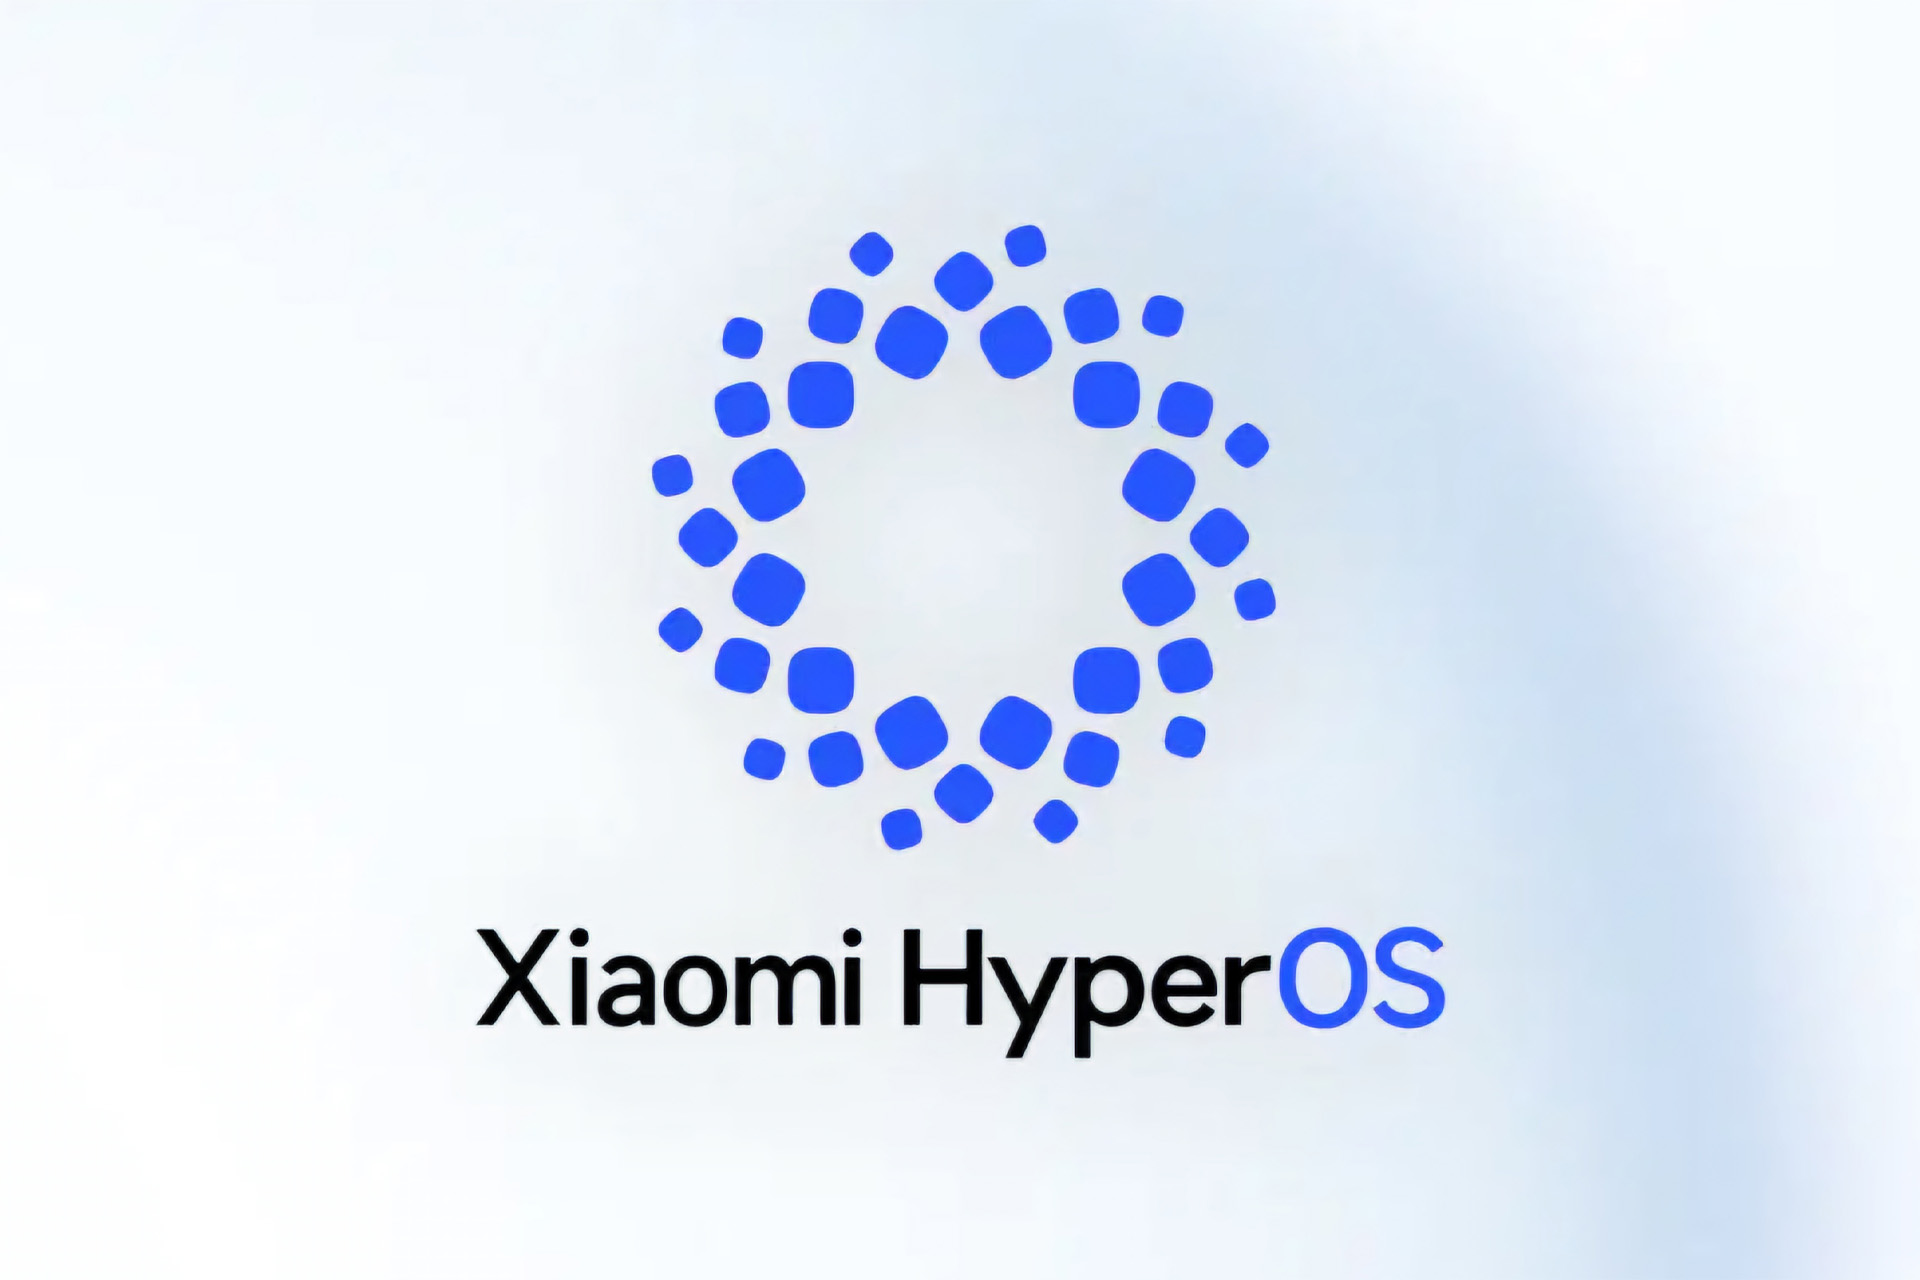 این لوگو رسمی سیستم عامل HyperOS است؛ کهکشان شیائومی